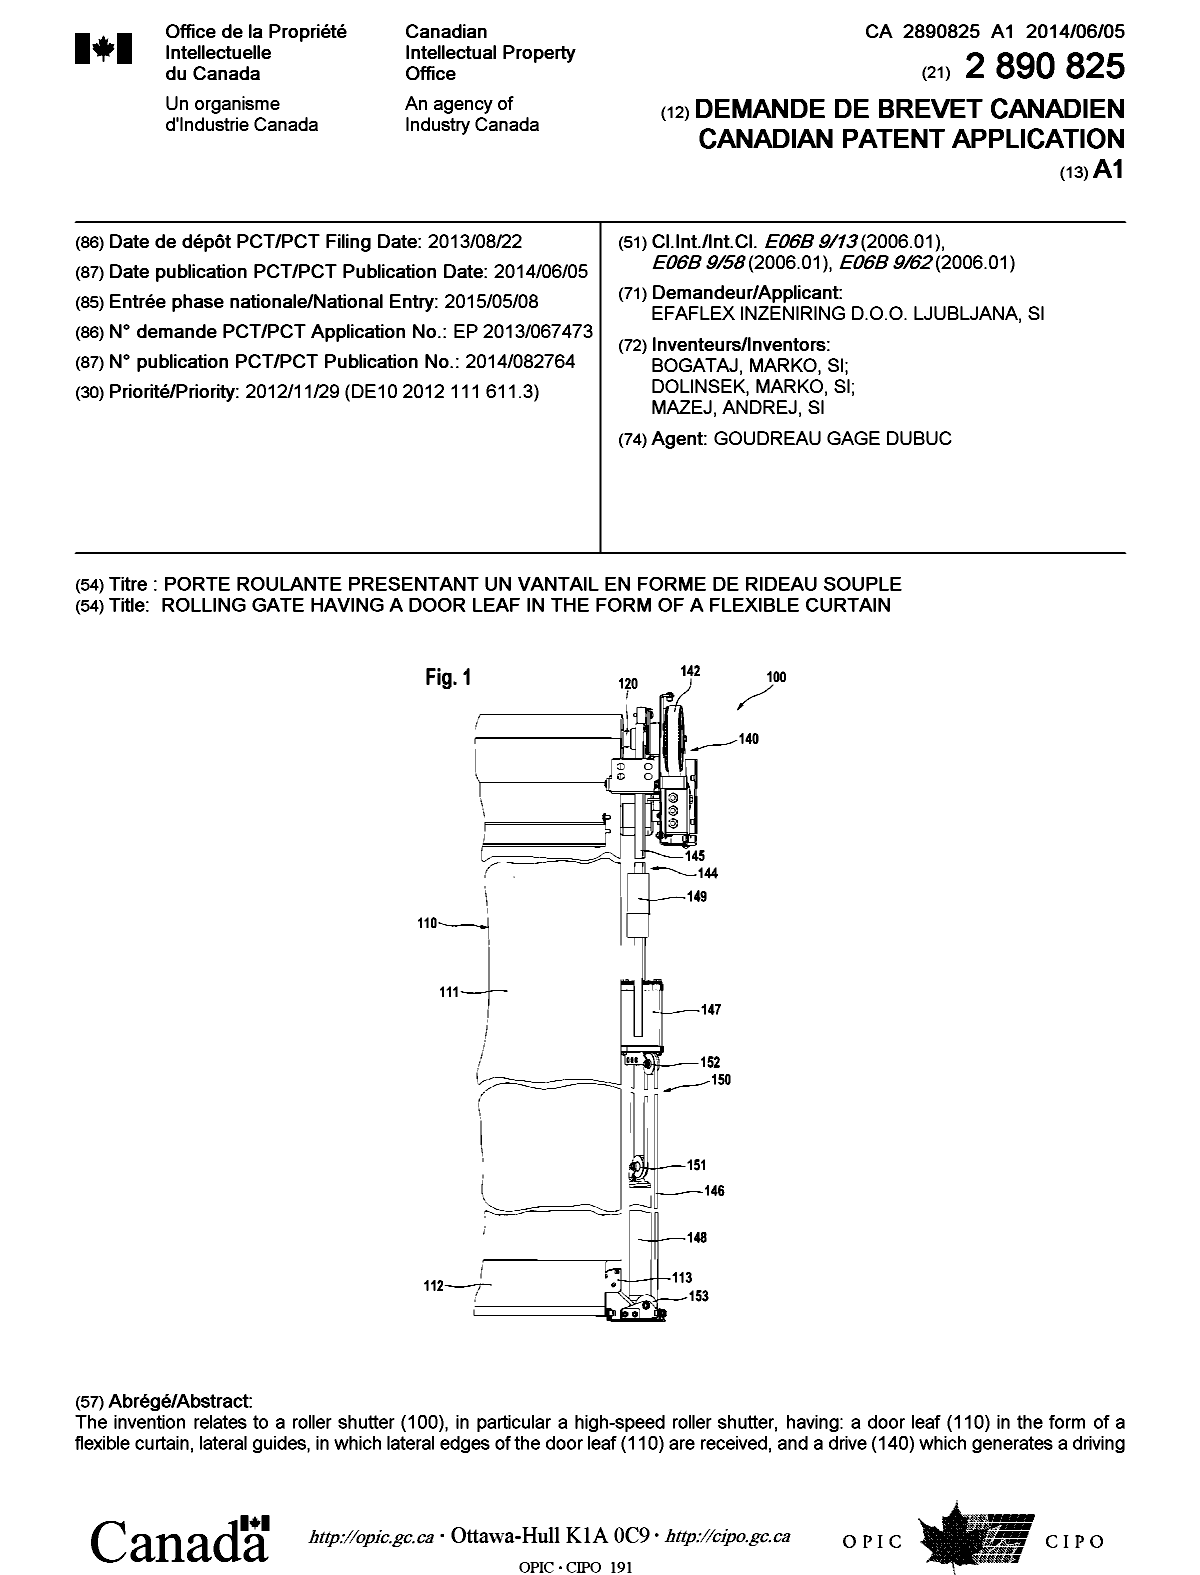 Document de brevet canadien 2890825. Page couverture 20141228. Image 1 de 2